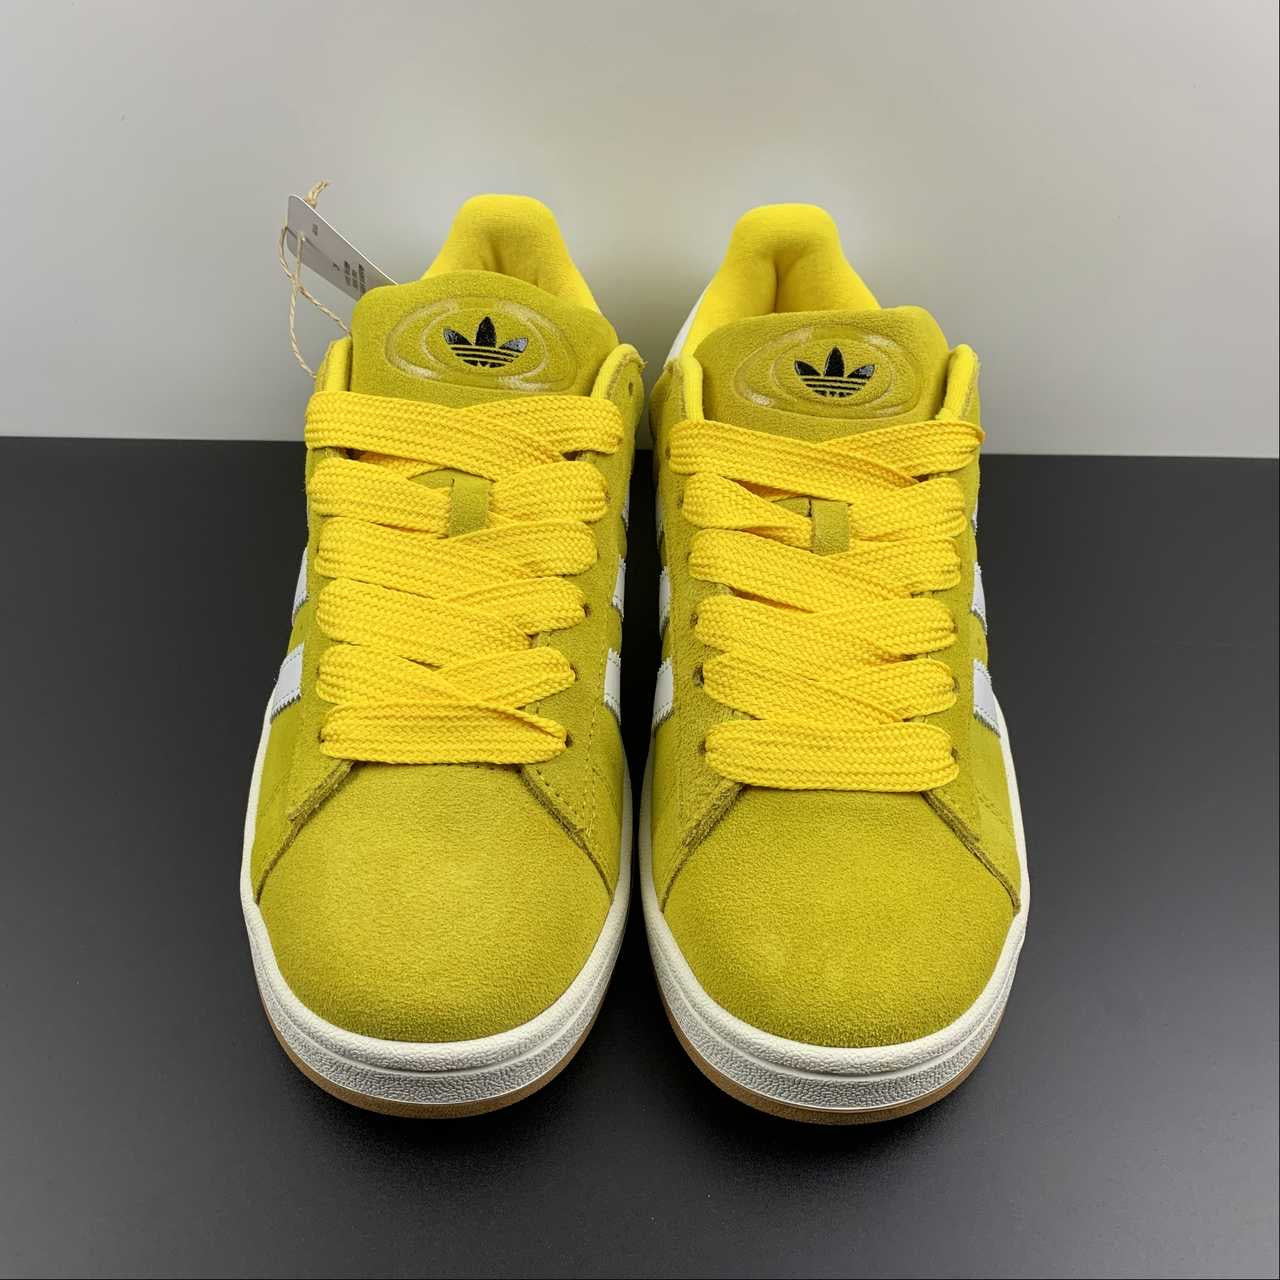 Adidas campus chaussures jaunes